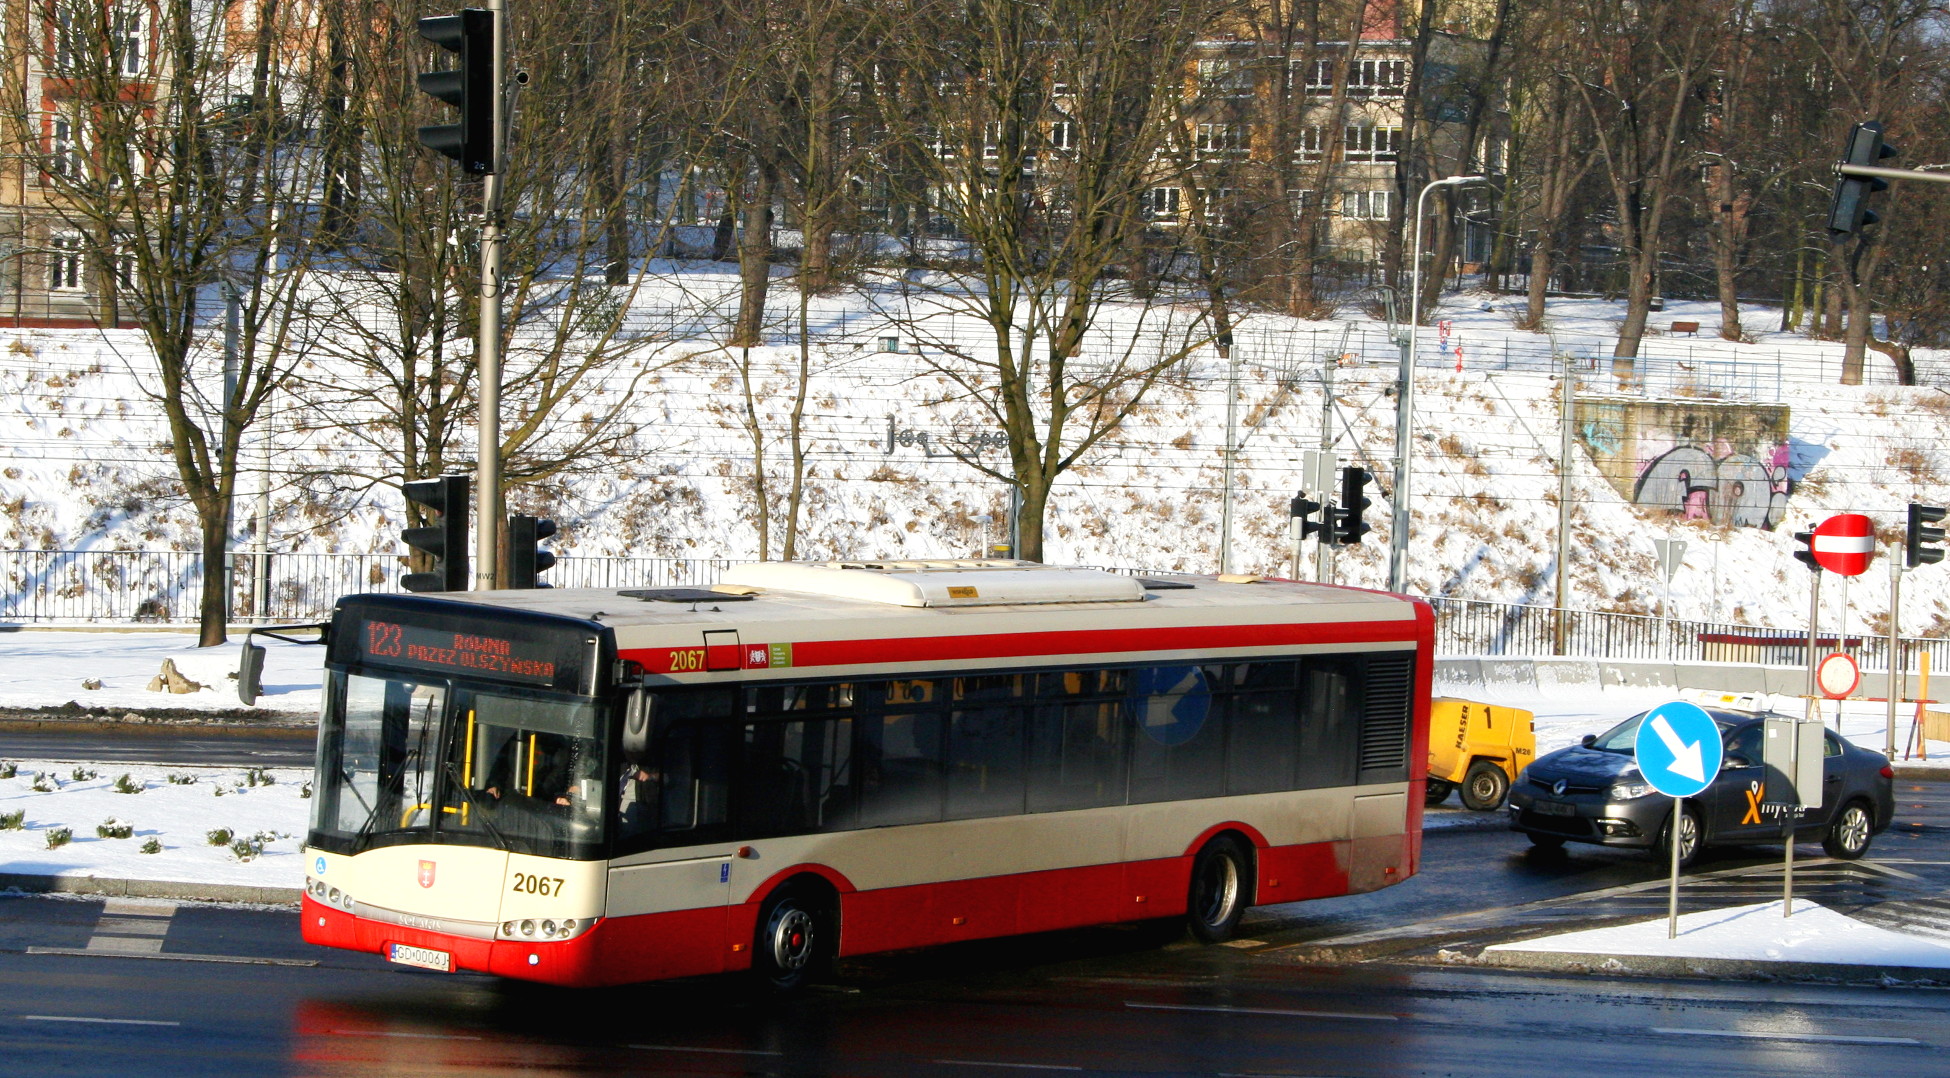 Wodorowy albo elektryczny autobus wyposażony w klimatyzację i ładowarki USB. Komunikacja miejska w Trójmieście staje się przyjazna środowisku